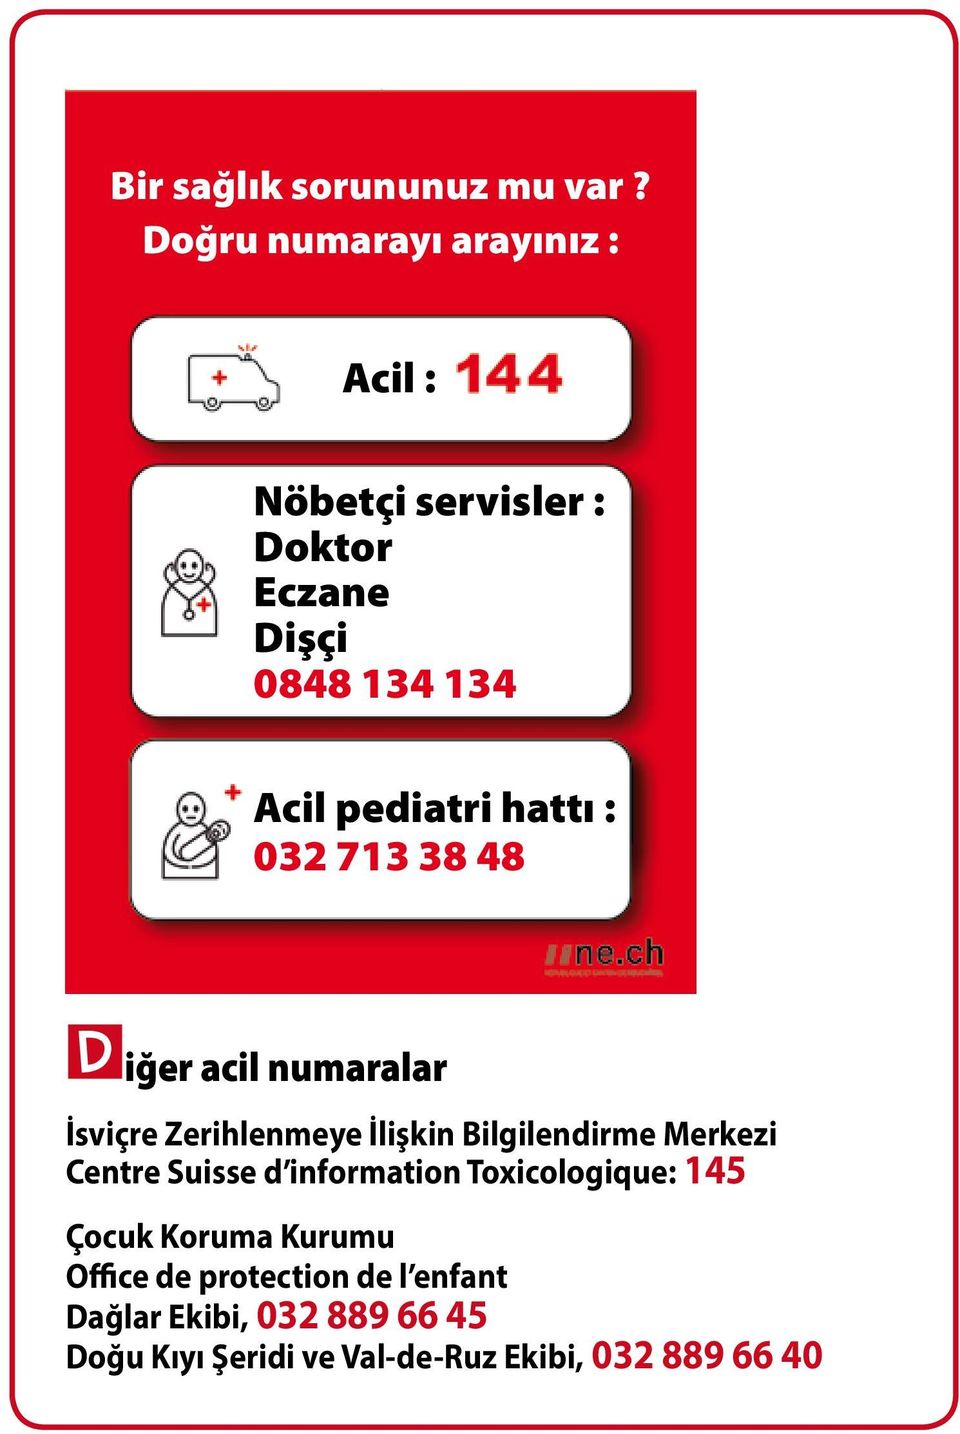 hattı : 032 713 38 48 diğer acil numaralar İsviçre Zerihlenmeye İlişkin Bilgilendirme Merkezi Centre